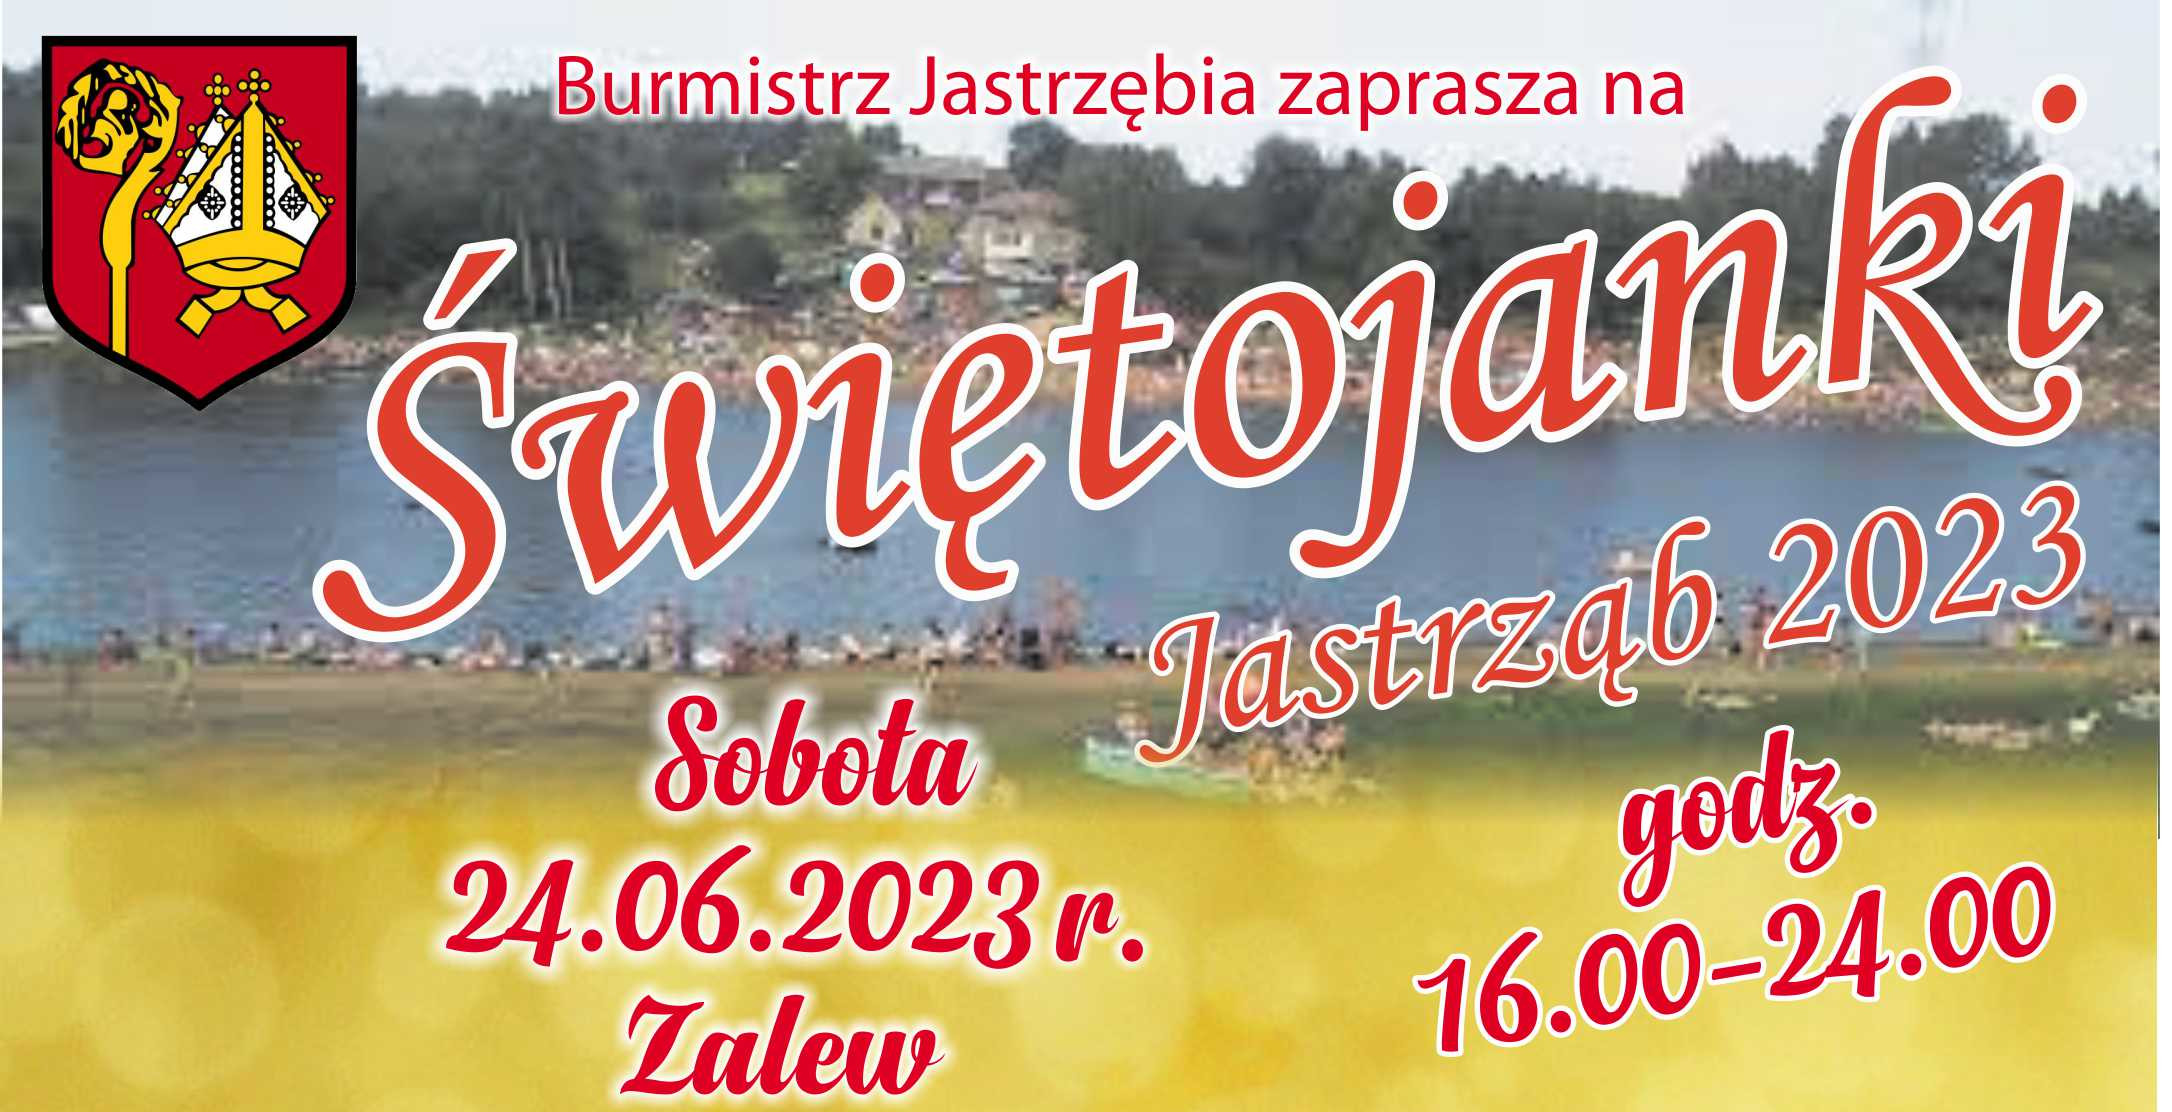 Świętojanki 2023 - Zalew w Jastrzębiu 24.06.2023 r. godz. 16.00